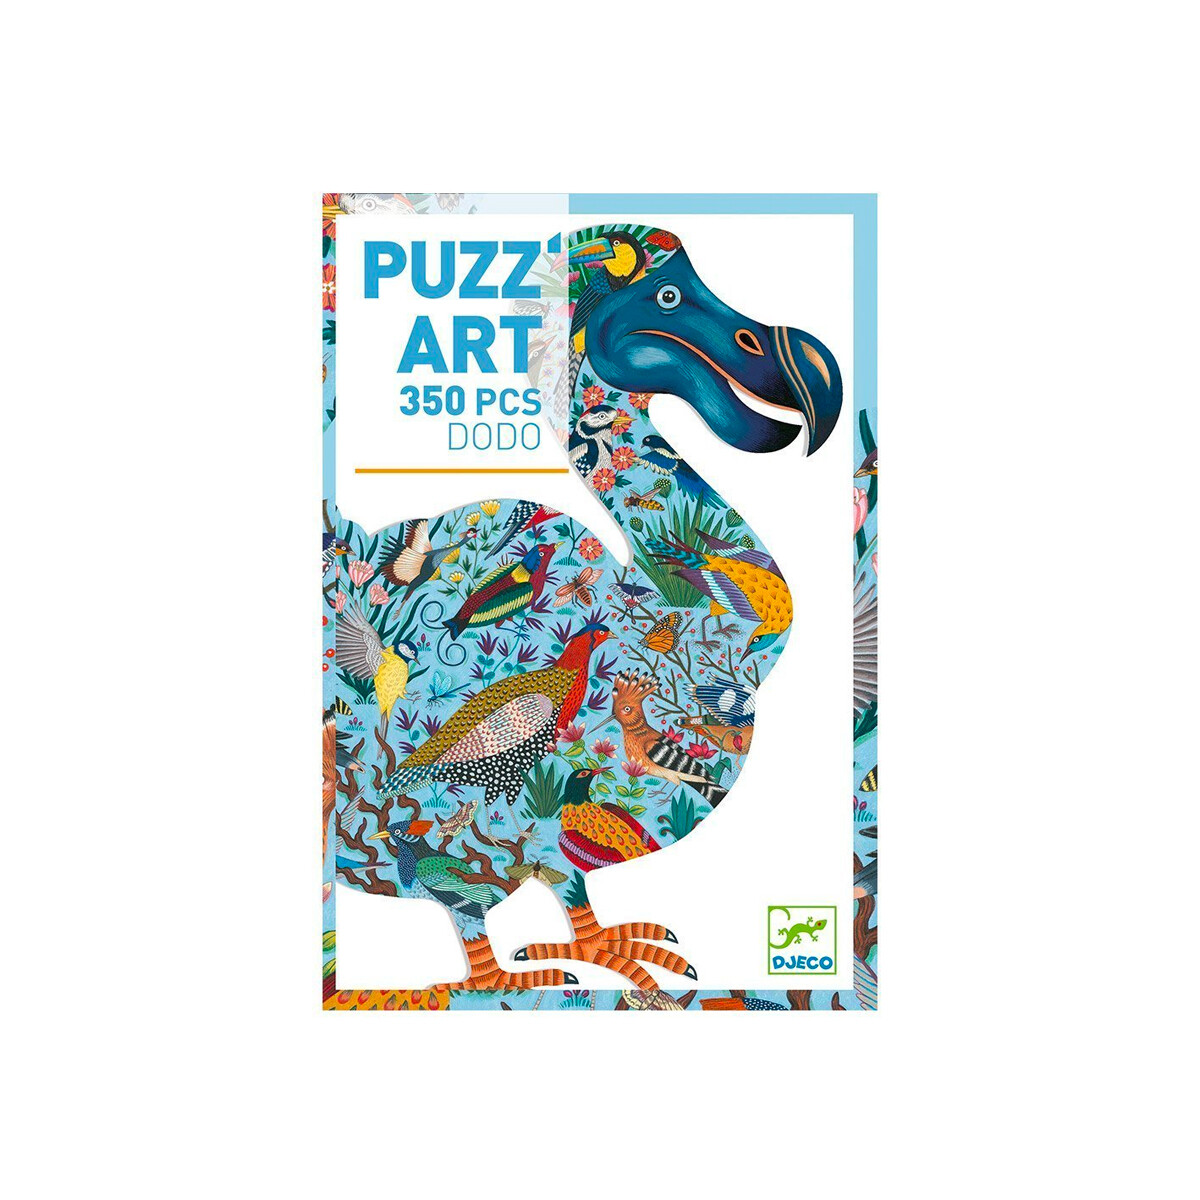 Puzzle Djeco 350 piezas - Diseño Dodo 